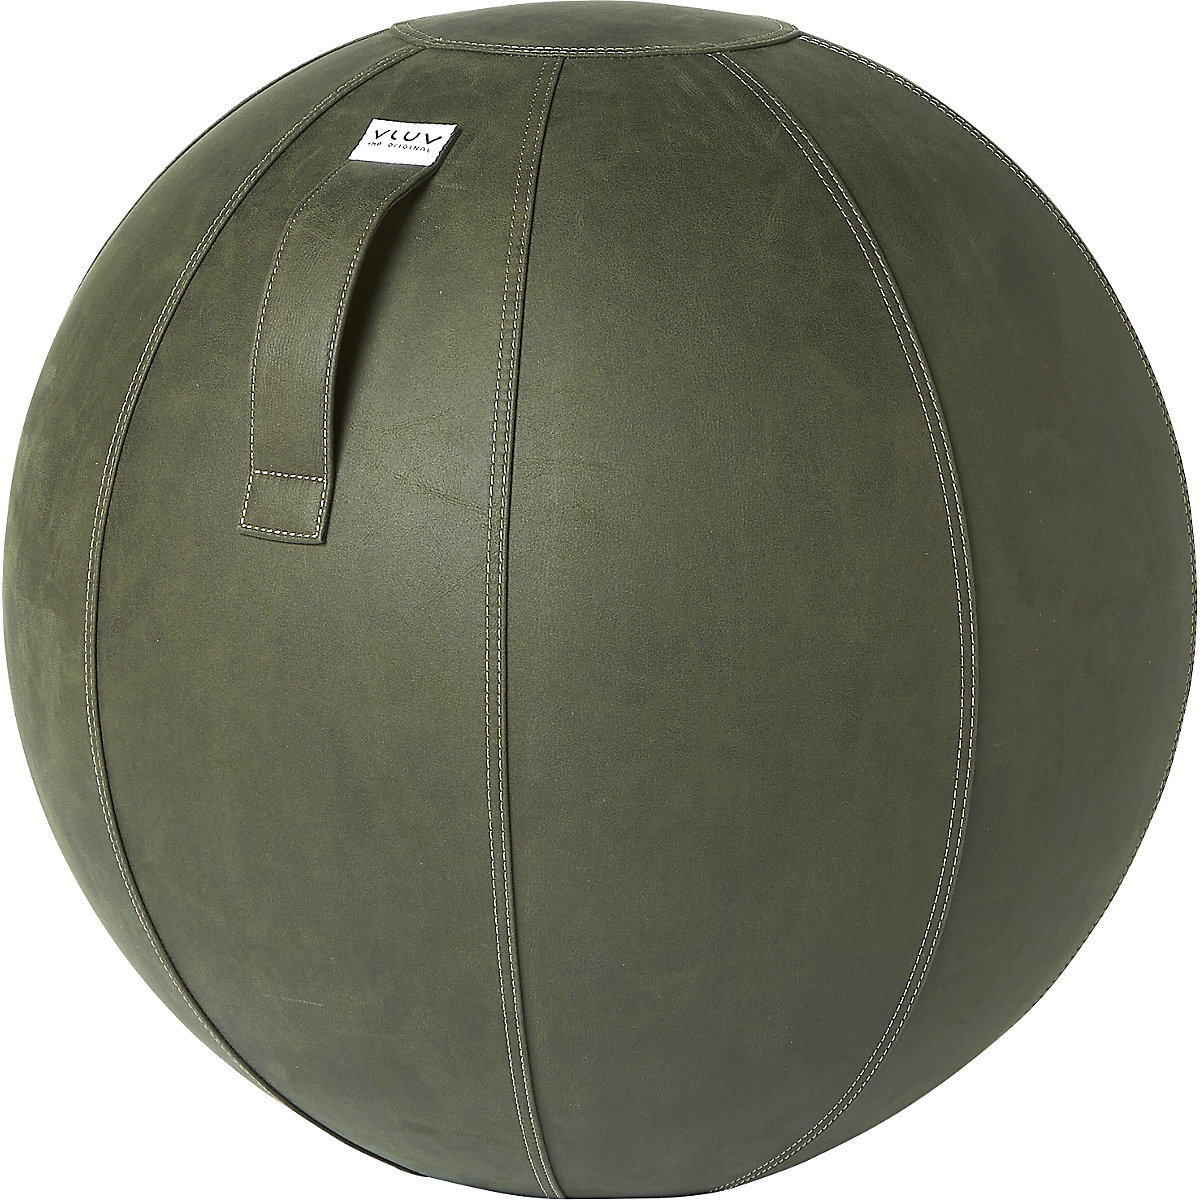 VEGA Swiss ball – VLUV, vegan vinyl, 600 – 650 mm, moss green-7